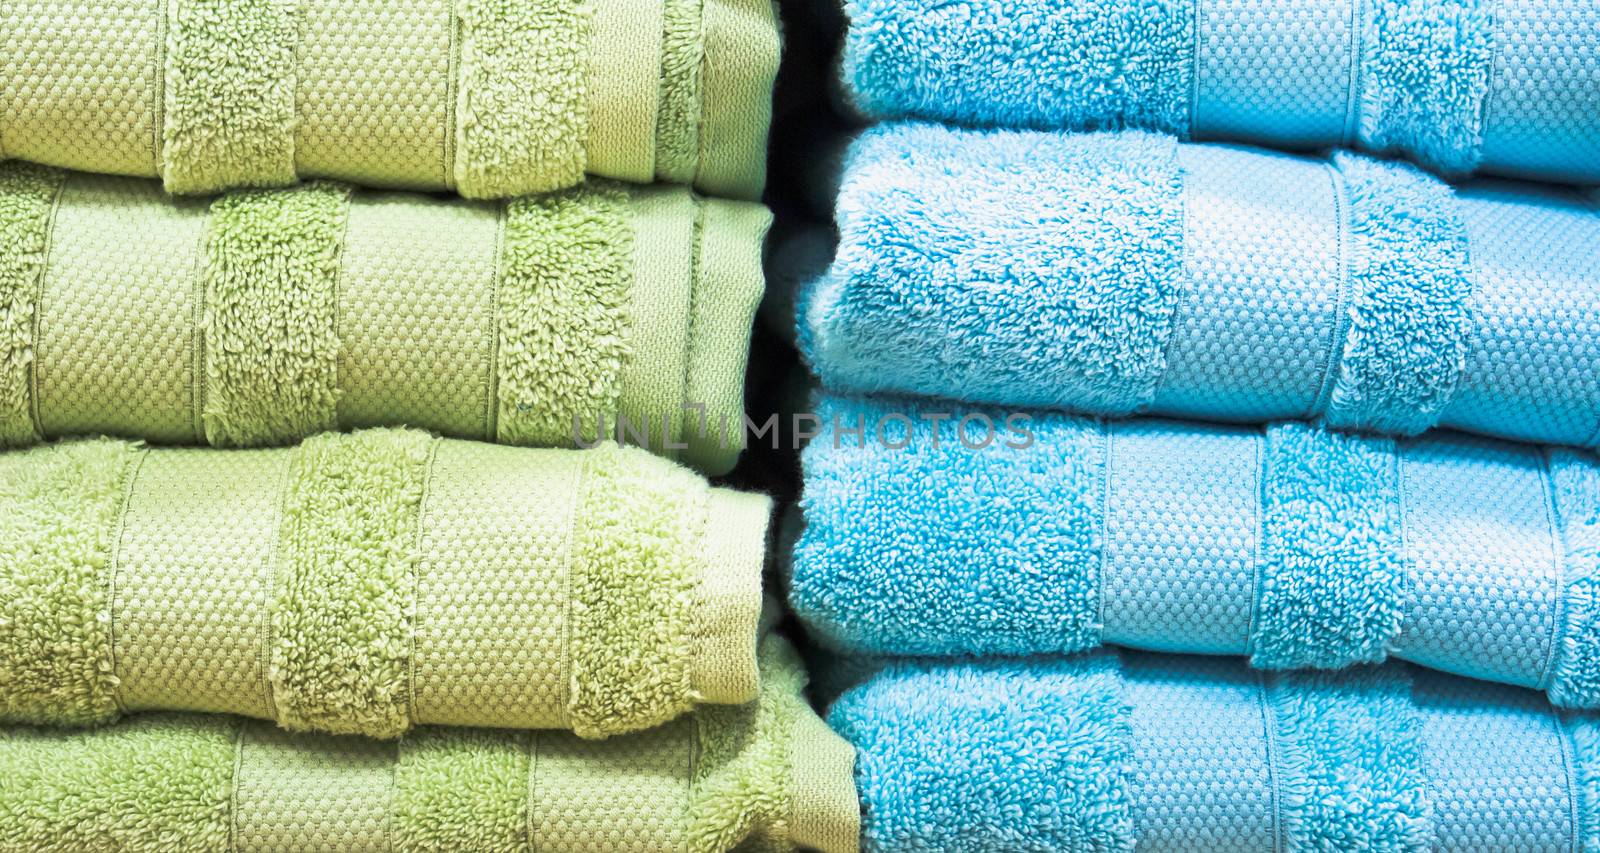 Towels by trgowanlock